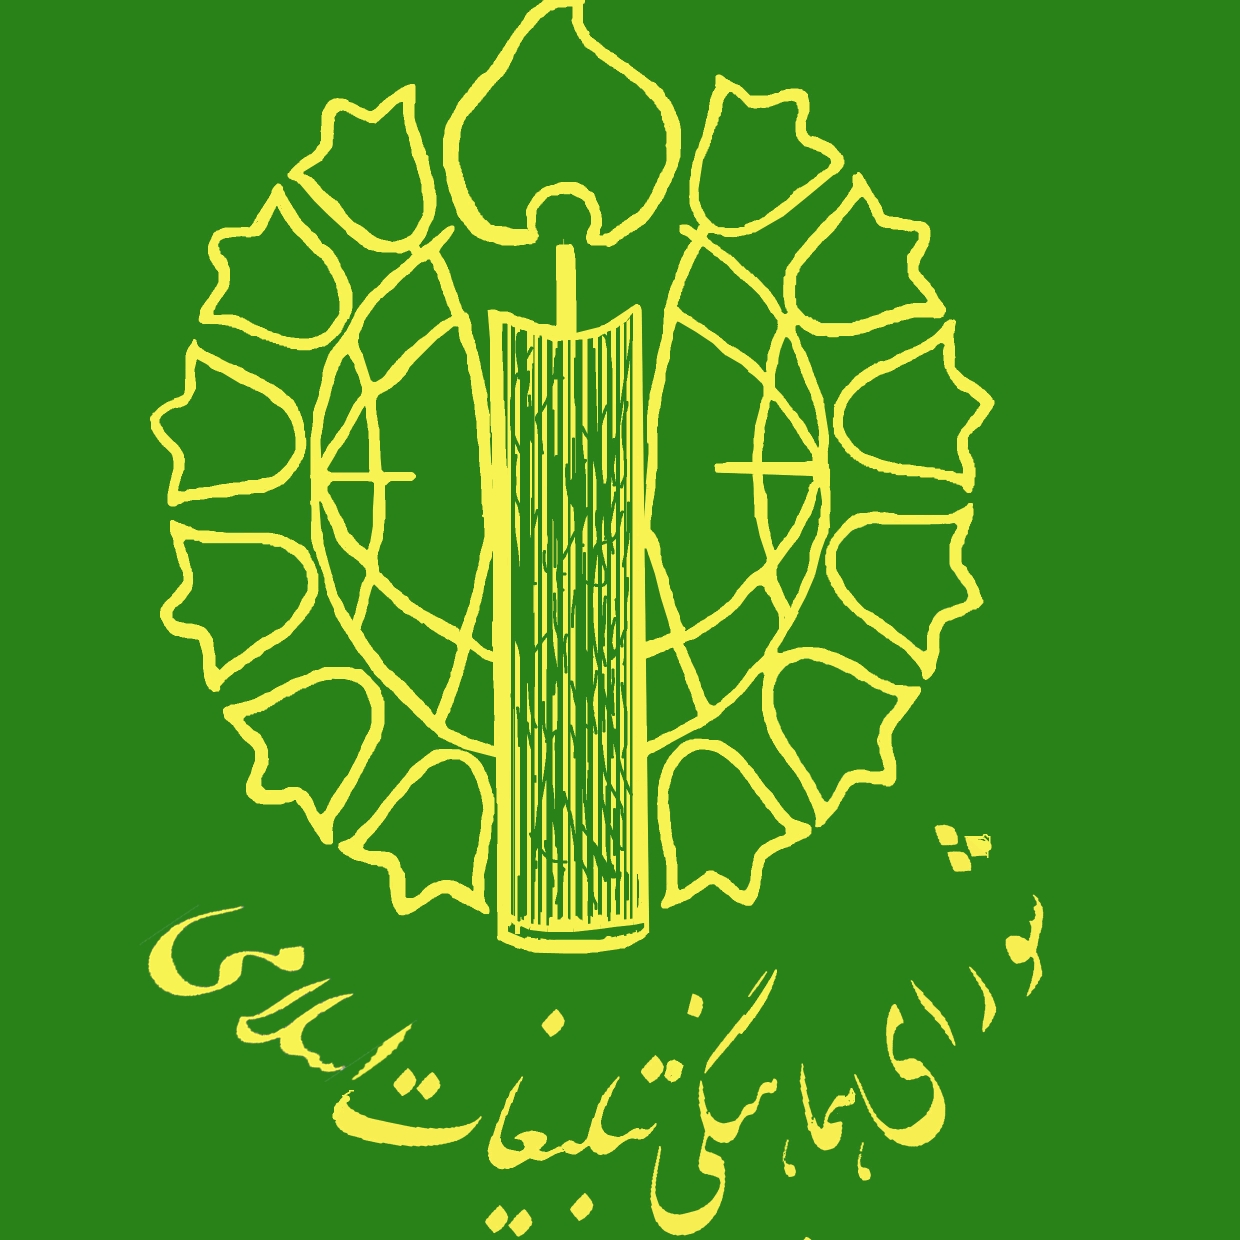 بیانیه قدردانی شورای هماهنگی تبلیغات اسلامی از هوشمندی و بصیرت ملت ایران